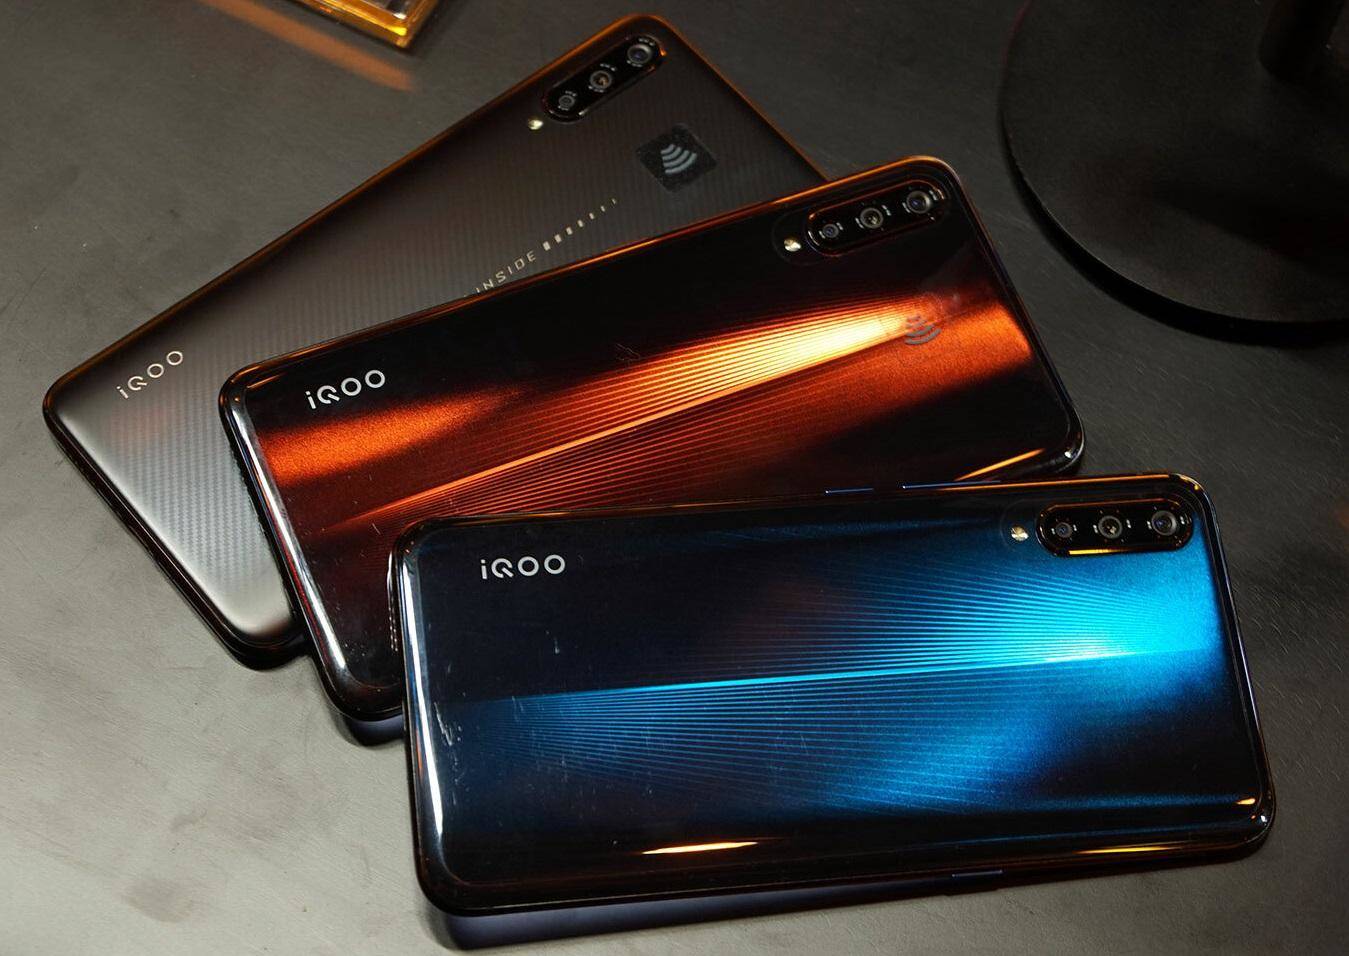 Vivo IQoo स्मार्टफोन के बारे में जाने इसमें क्या खास है? 